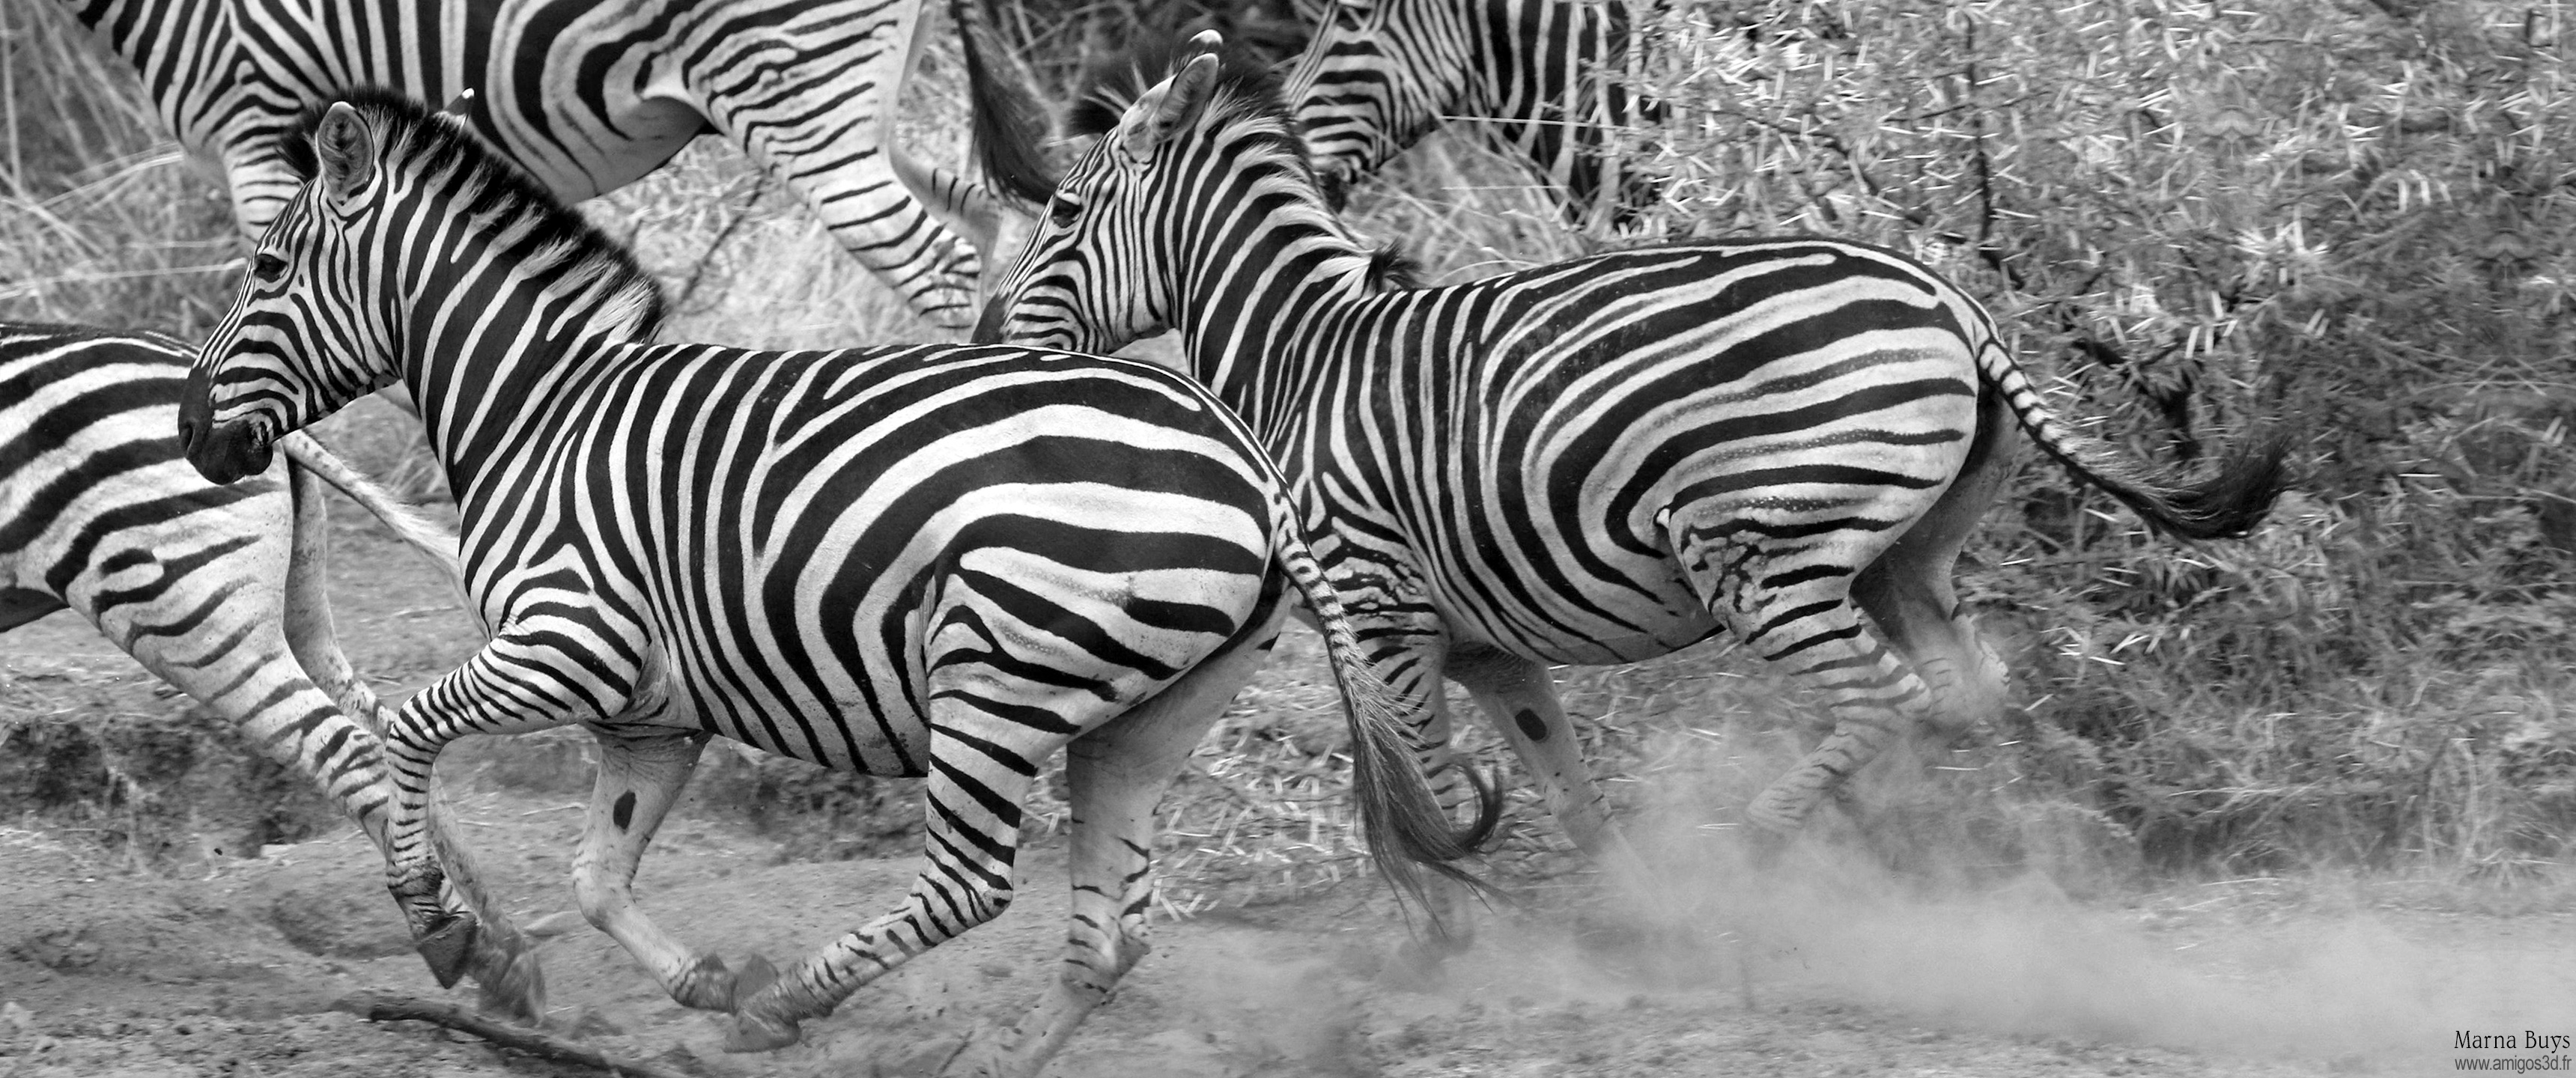 055-zebras